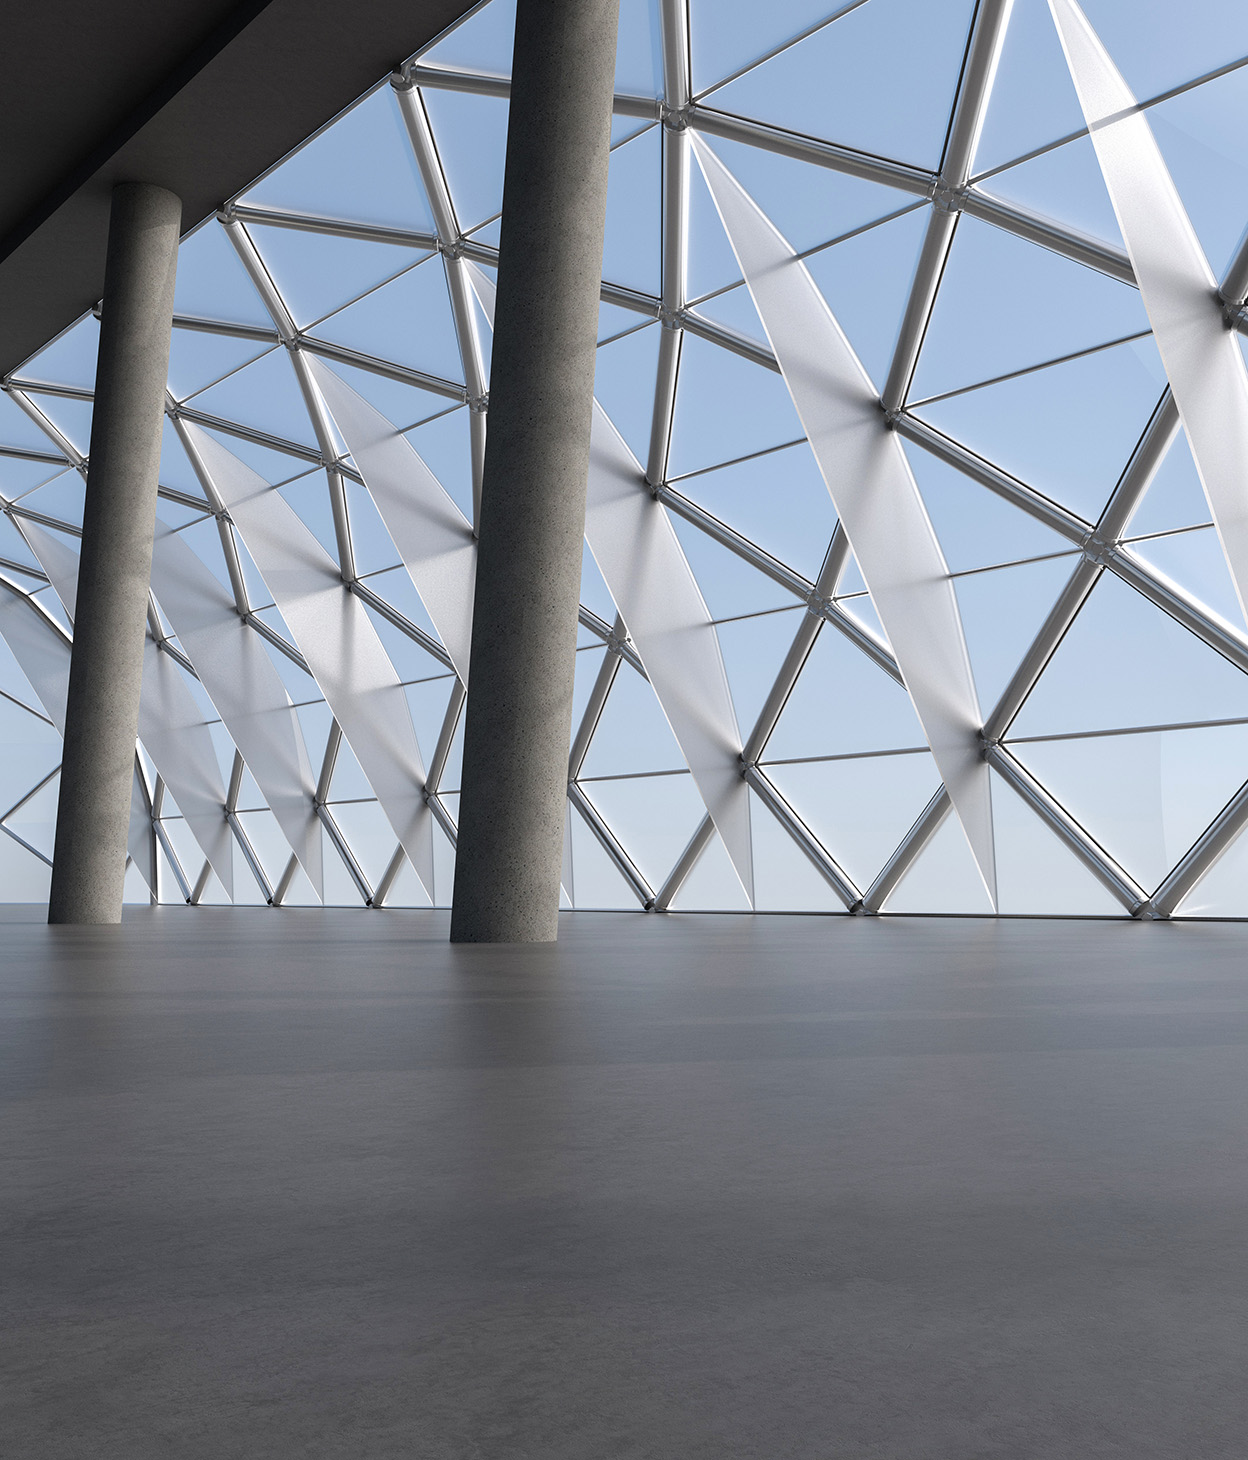 Imagem tridimensional computadorizada de um salão de exposições com colunas de concreto e uma janela arqueada